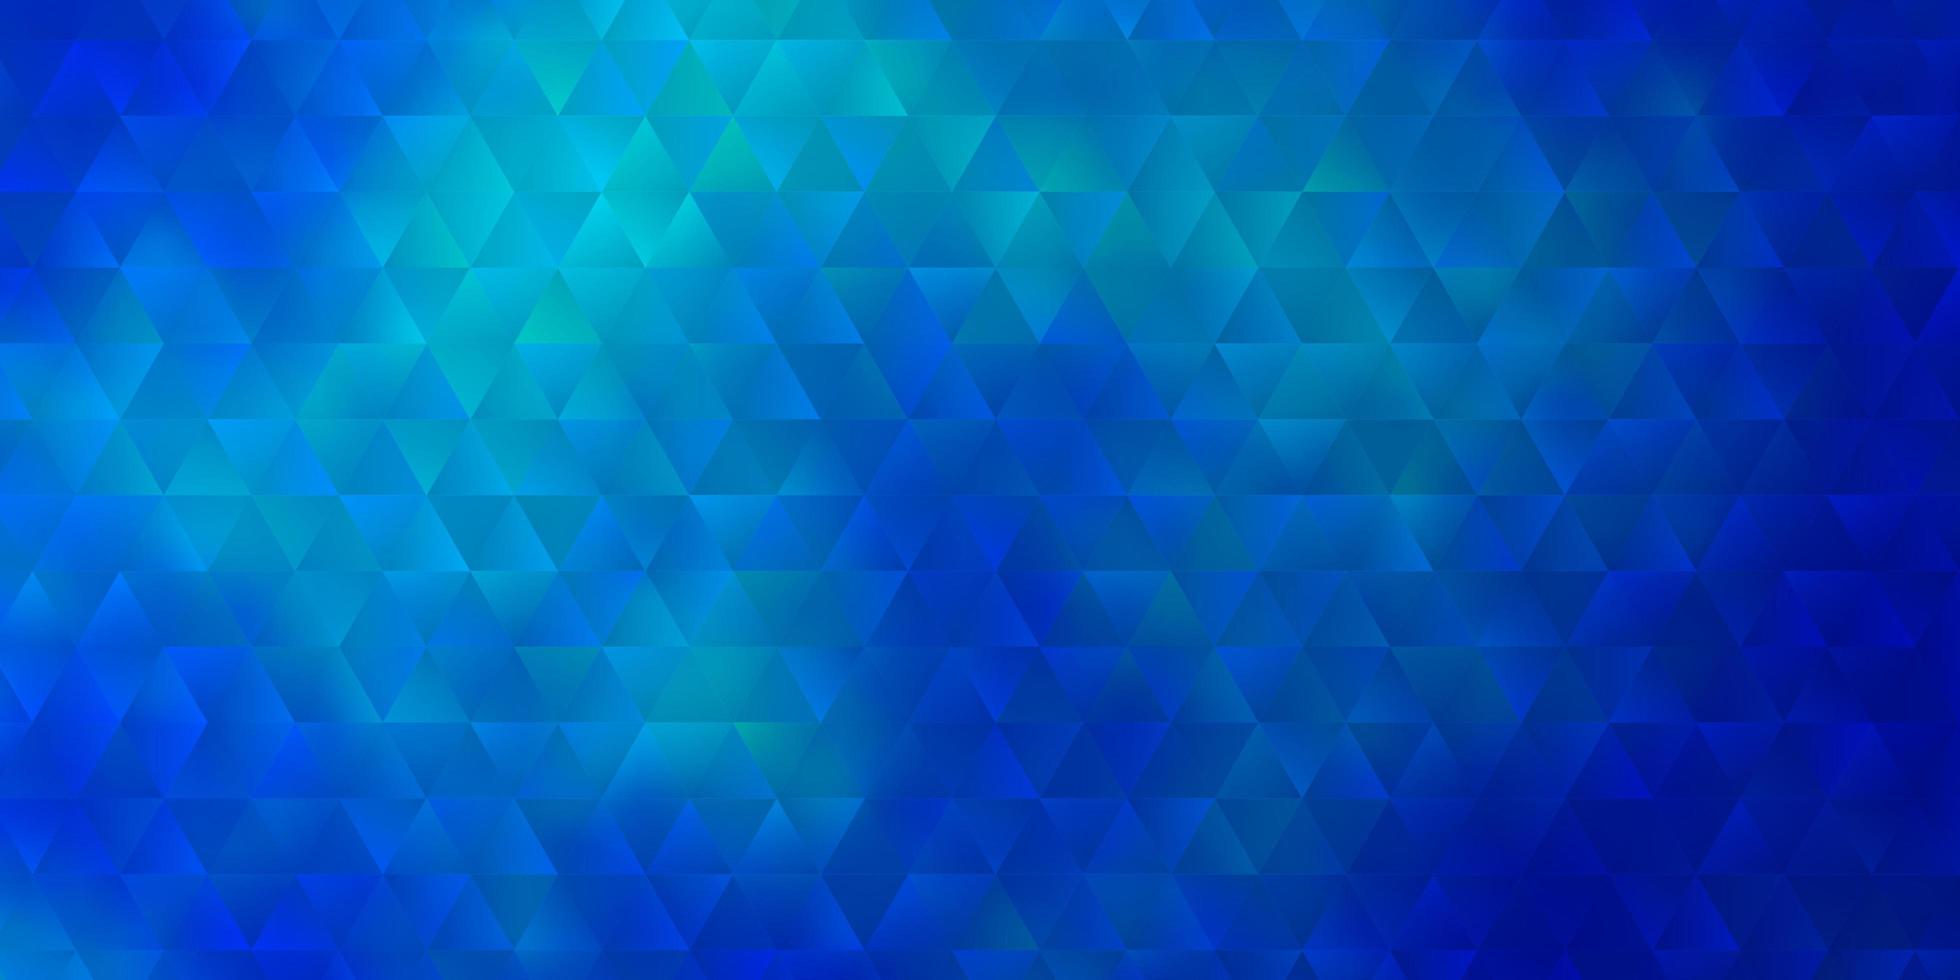 lichtblauw, geel vector sjabloon met kristallen, driehoeken.